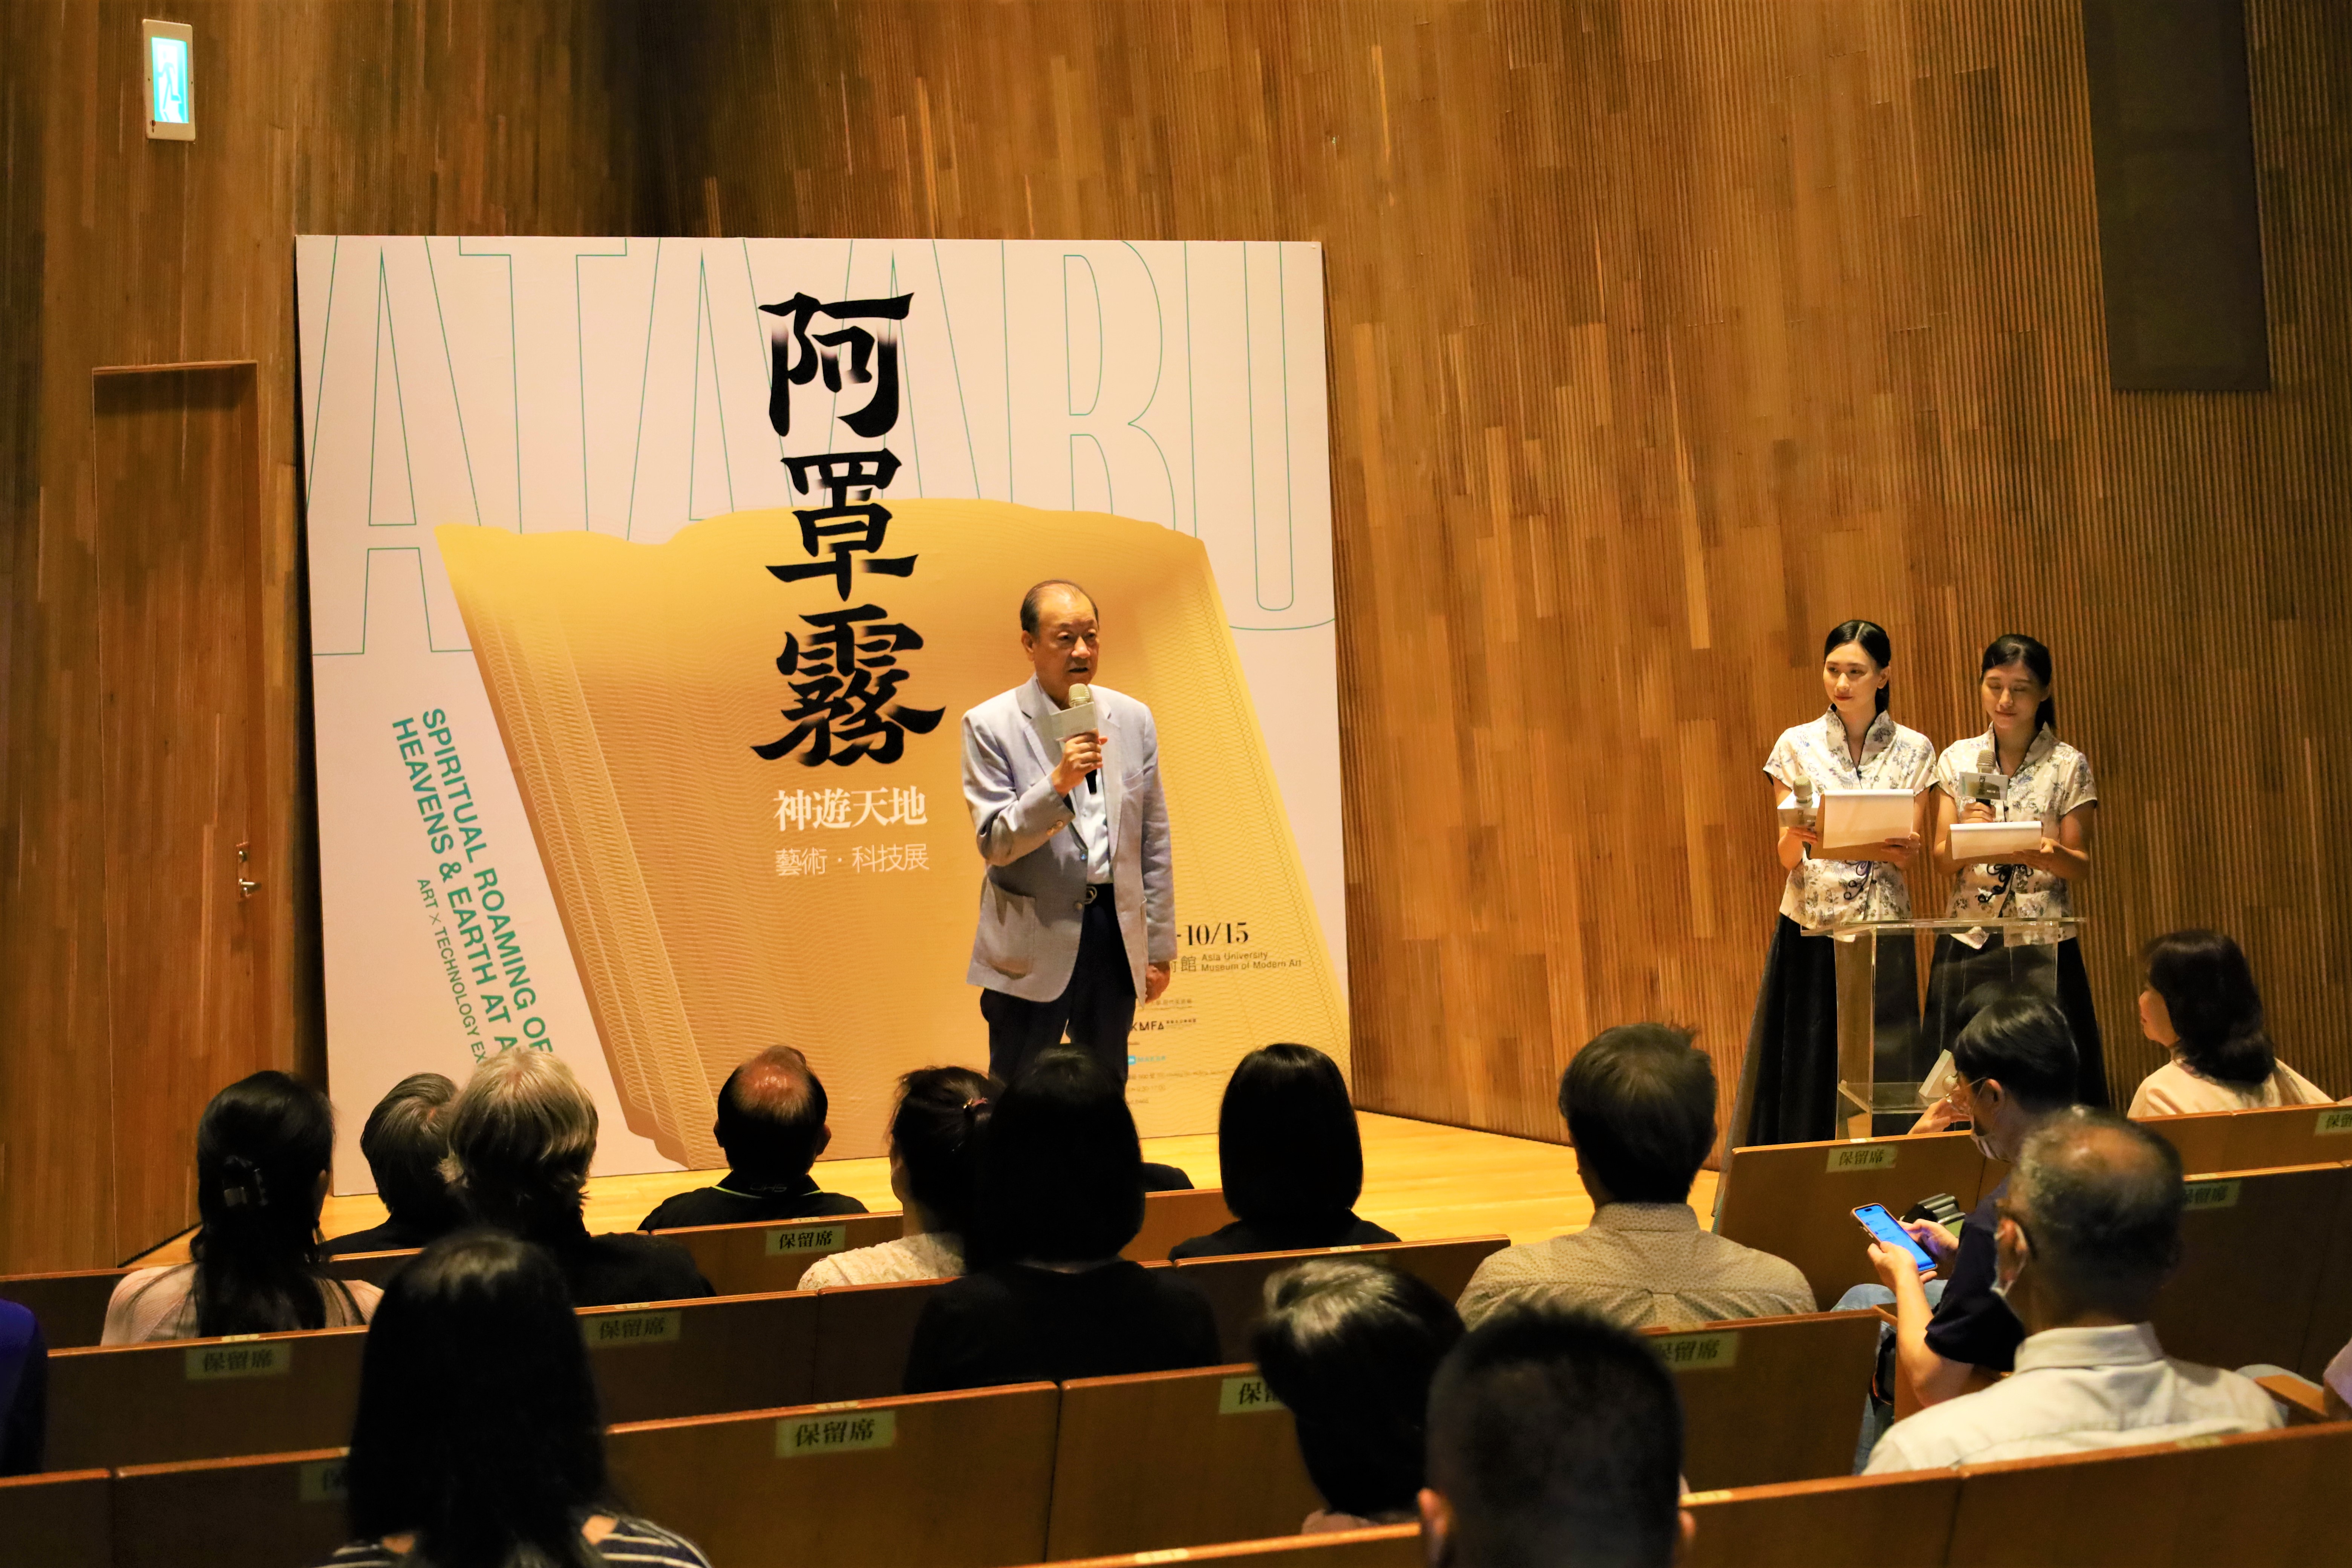 亞大創辦人蔡長海為亞美館「阿罩霧神遊天地—藝術・科技特展」開幕致詞。